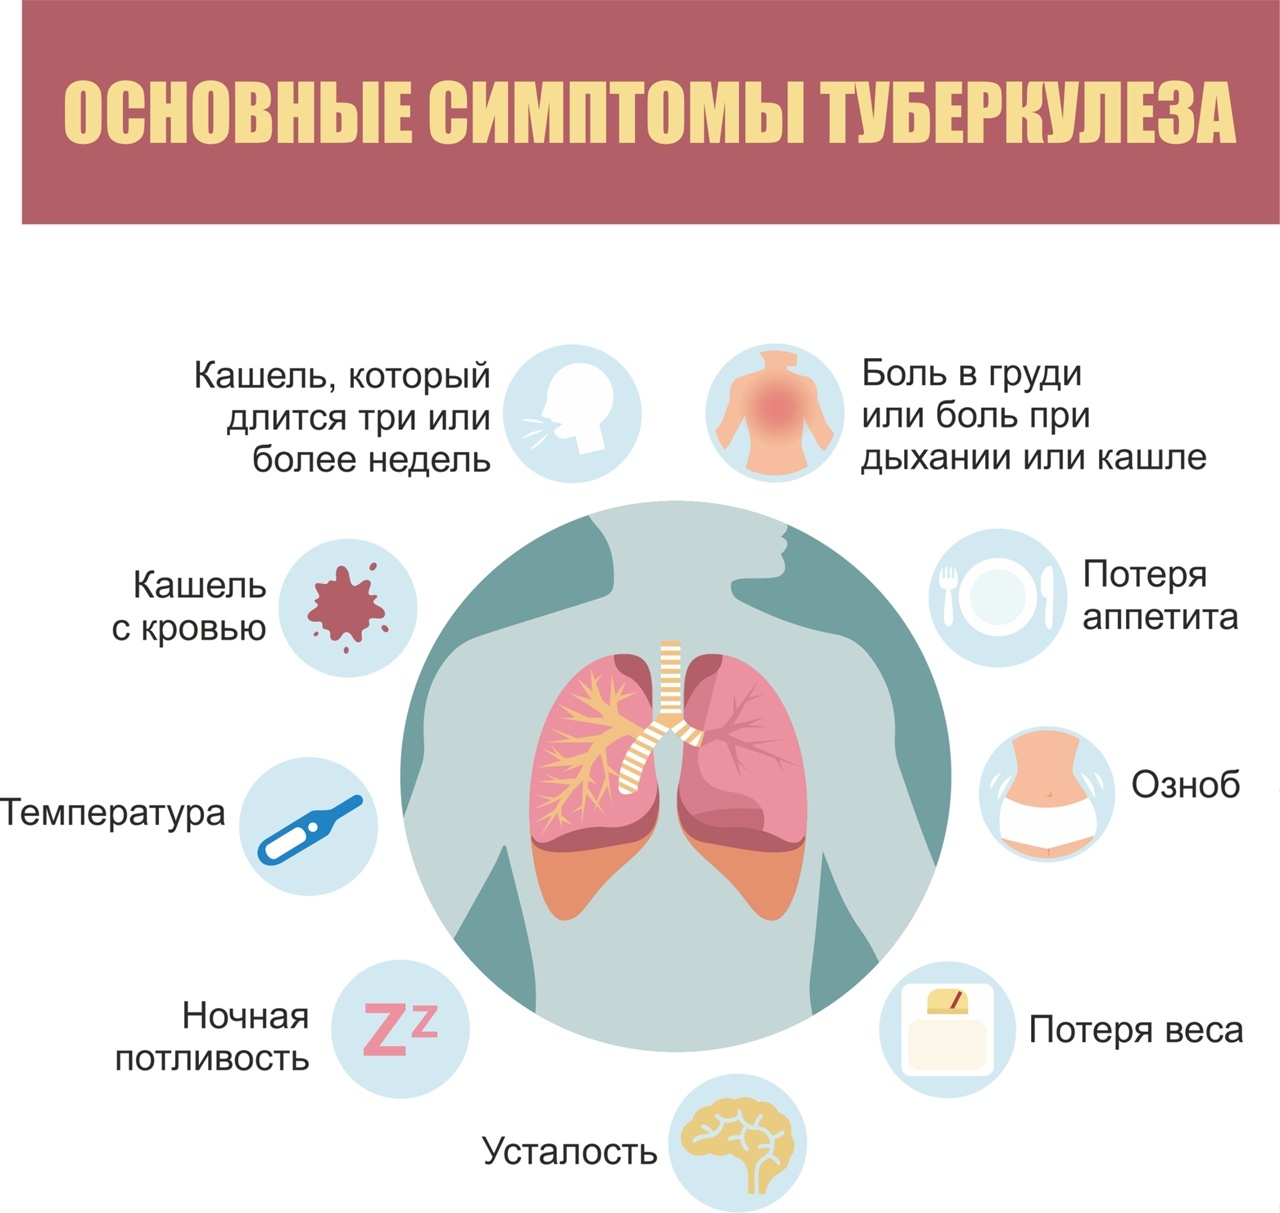 Заболевания лёгких (бронхит, пневмония, бронхиальная астма)